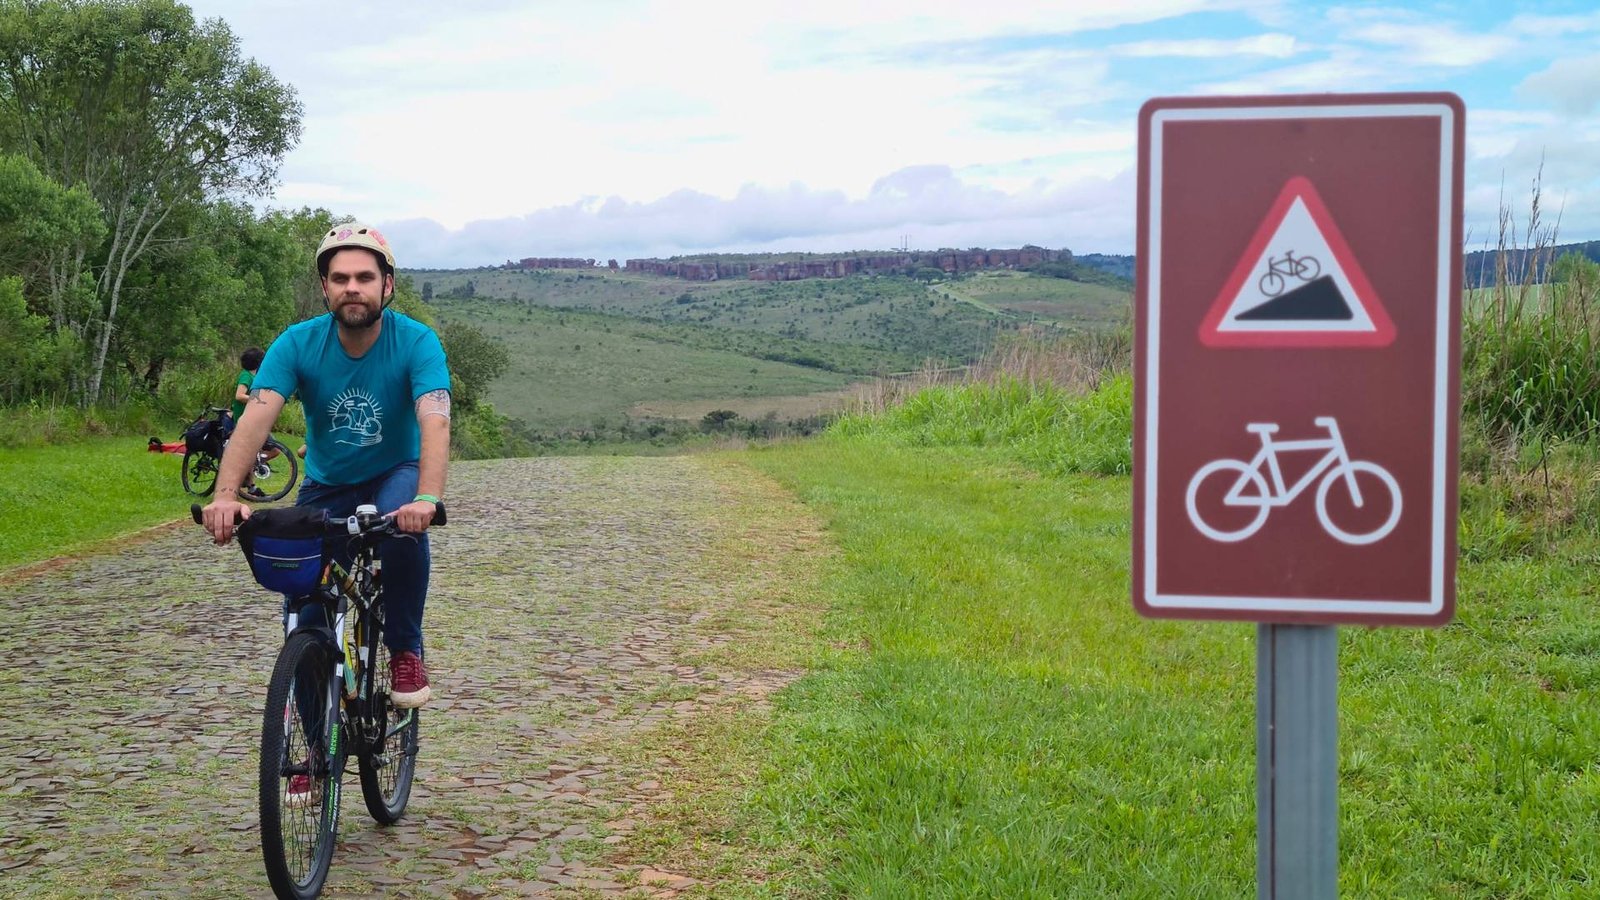 Deputado Goura pedala em rota autoguiada no Parque Vila Velha praticando Cicloturismo sustentável no Paraná 